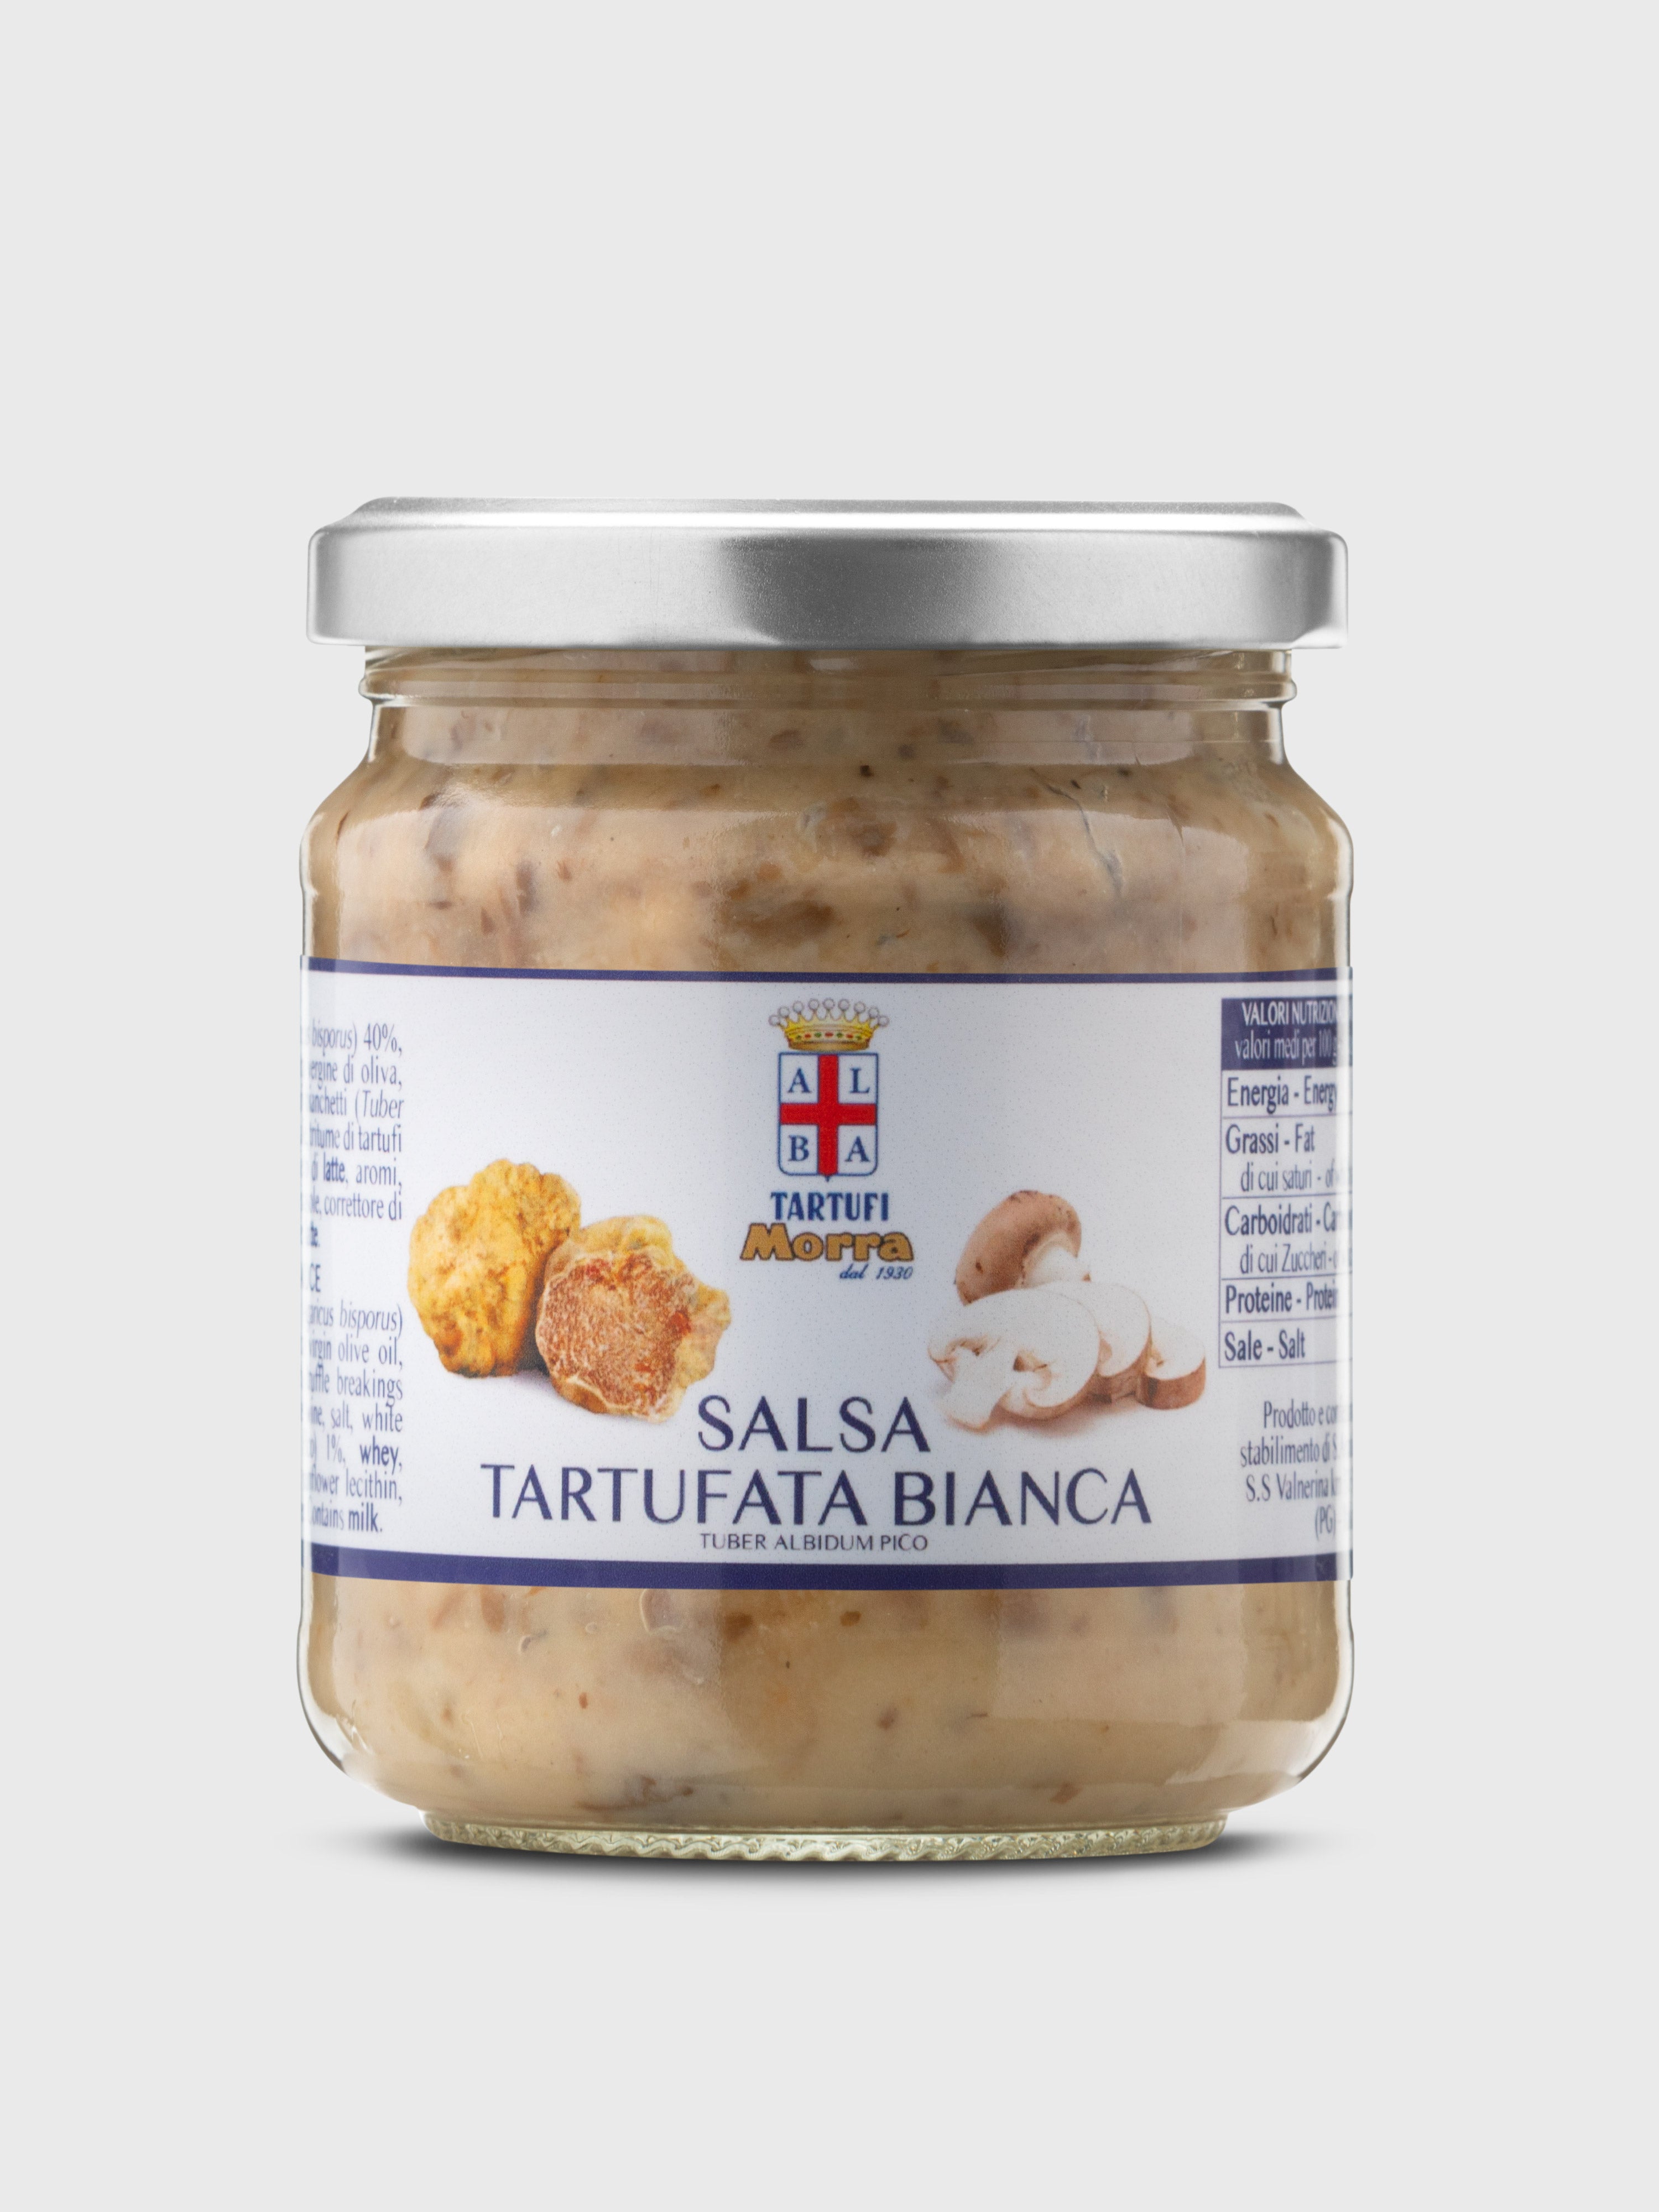 Tartufata - Mushroom Truffle & Olives 180g